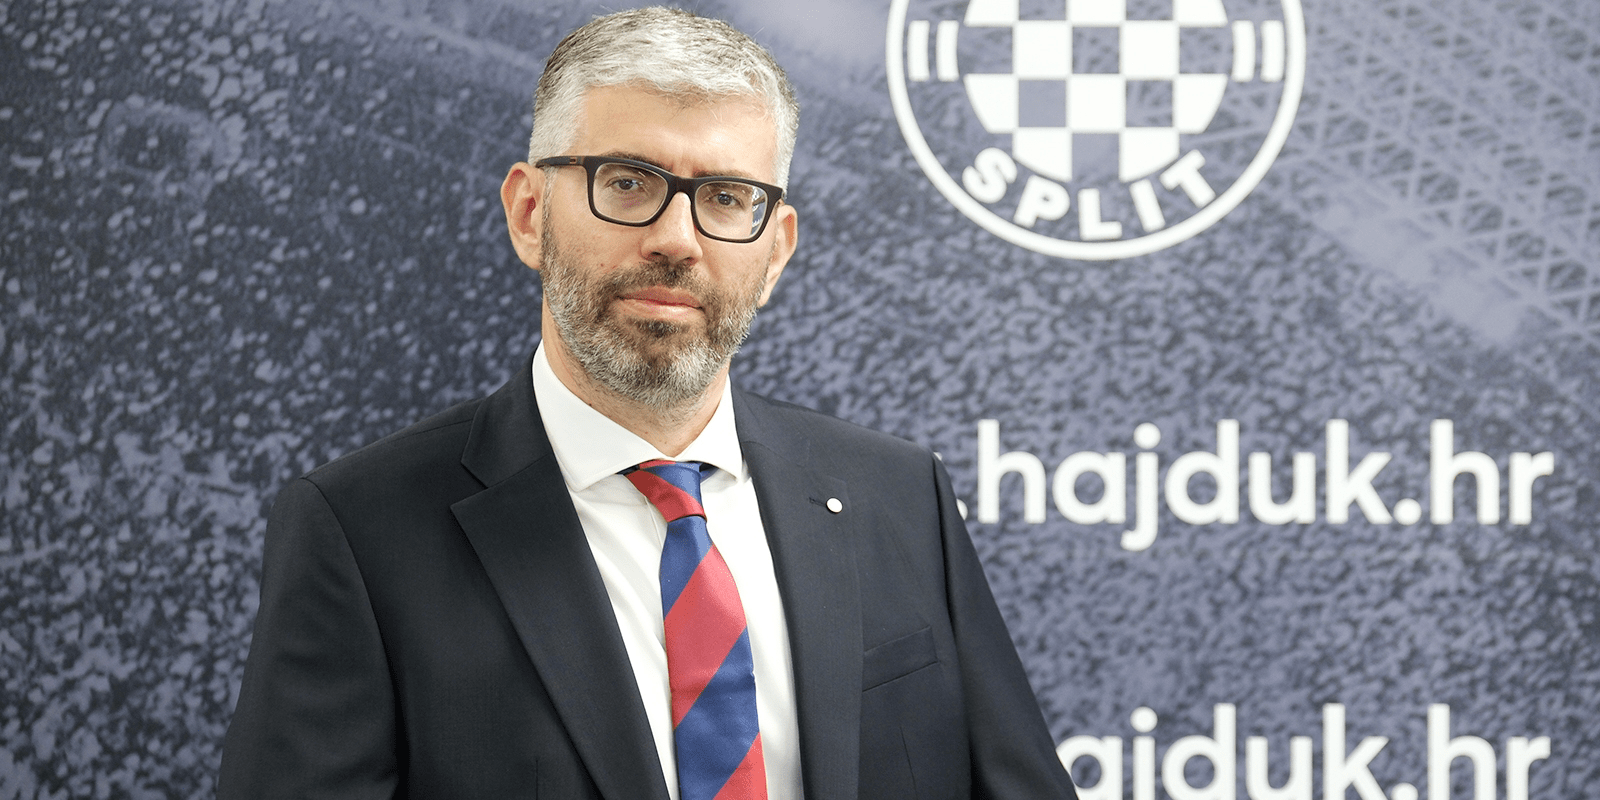 Donedavni predsjednik Uprave Presoflex gradnje novi predsjednik Hajduka